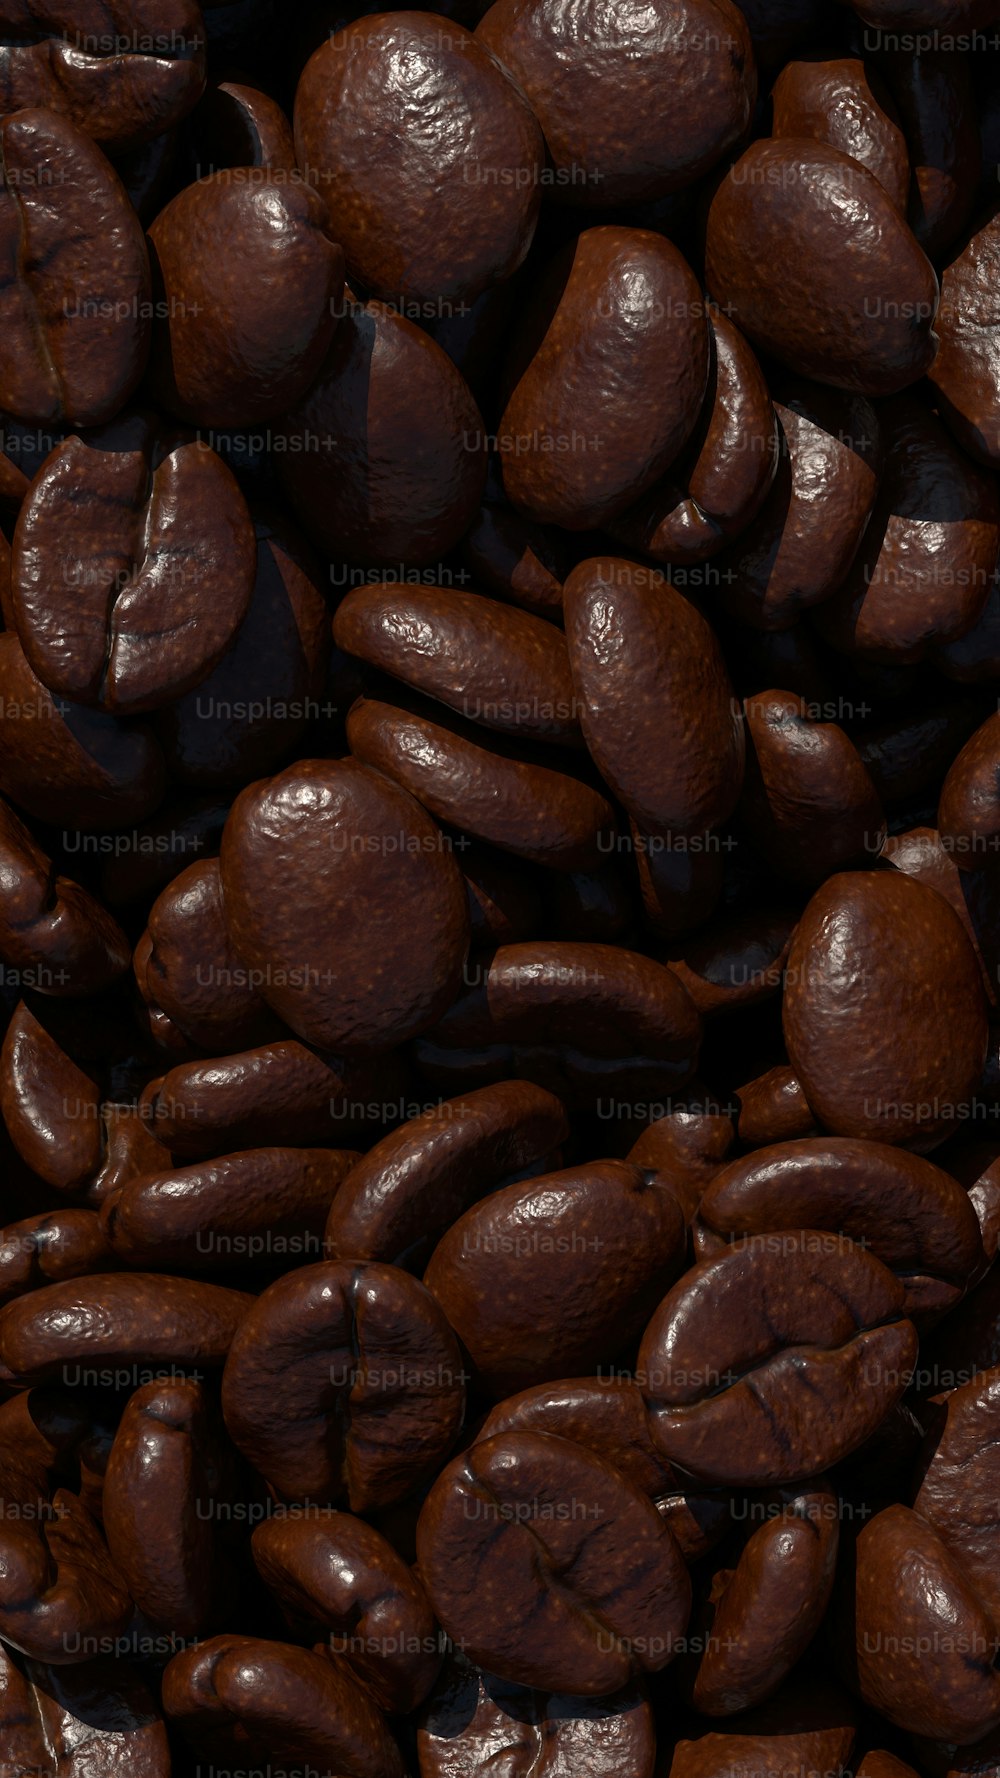 Ein Haufen Kaffeebohnen sitzt übereinander